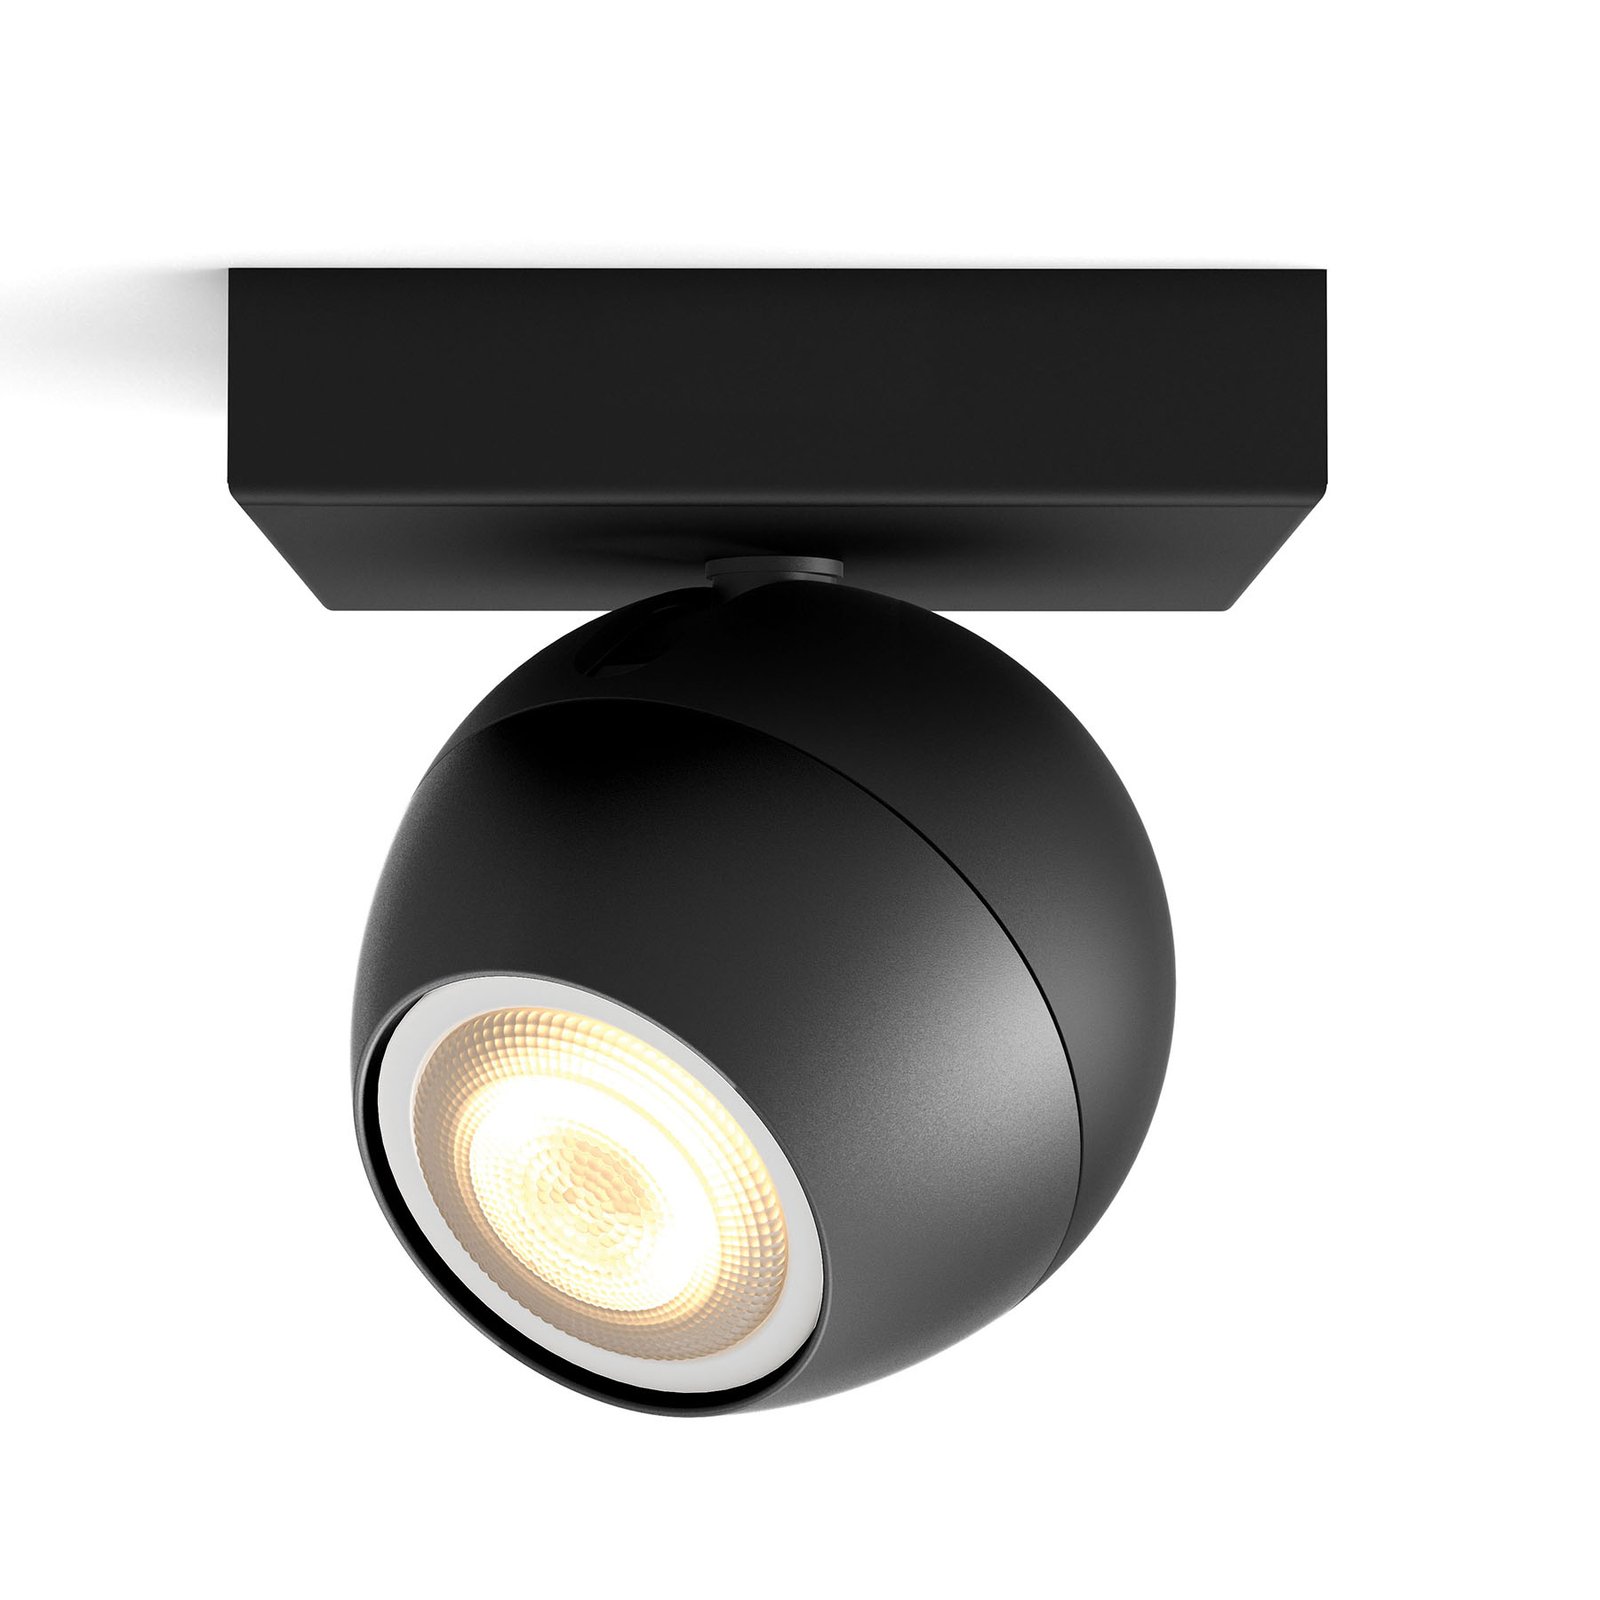 Philips Hue Buckram LED-Spot musta laajennus